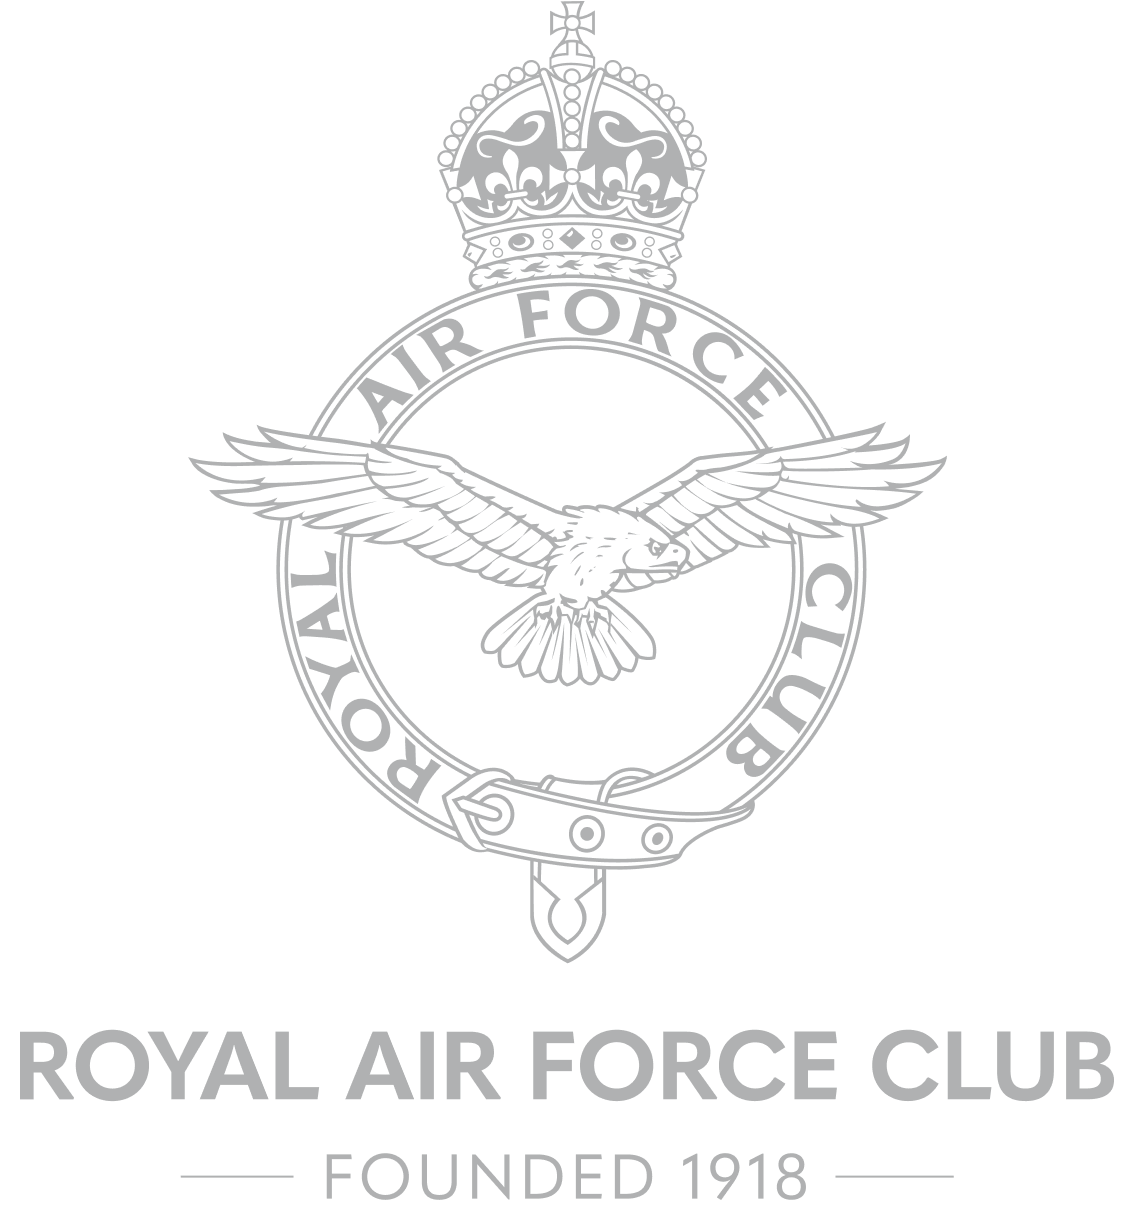 The Royal Air Force Club